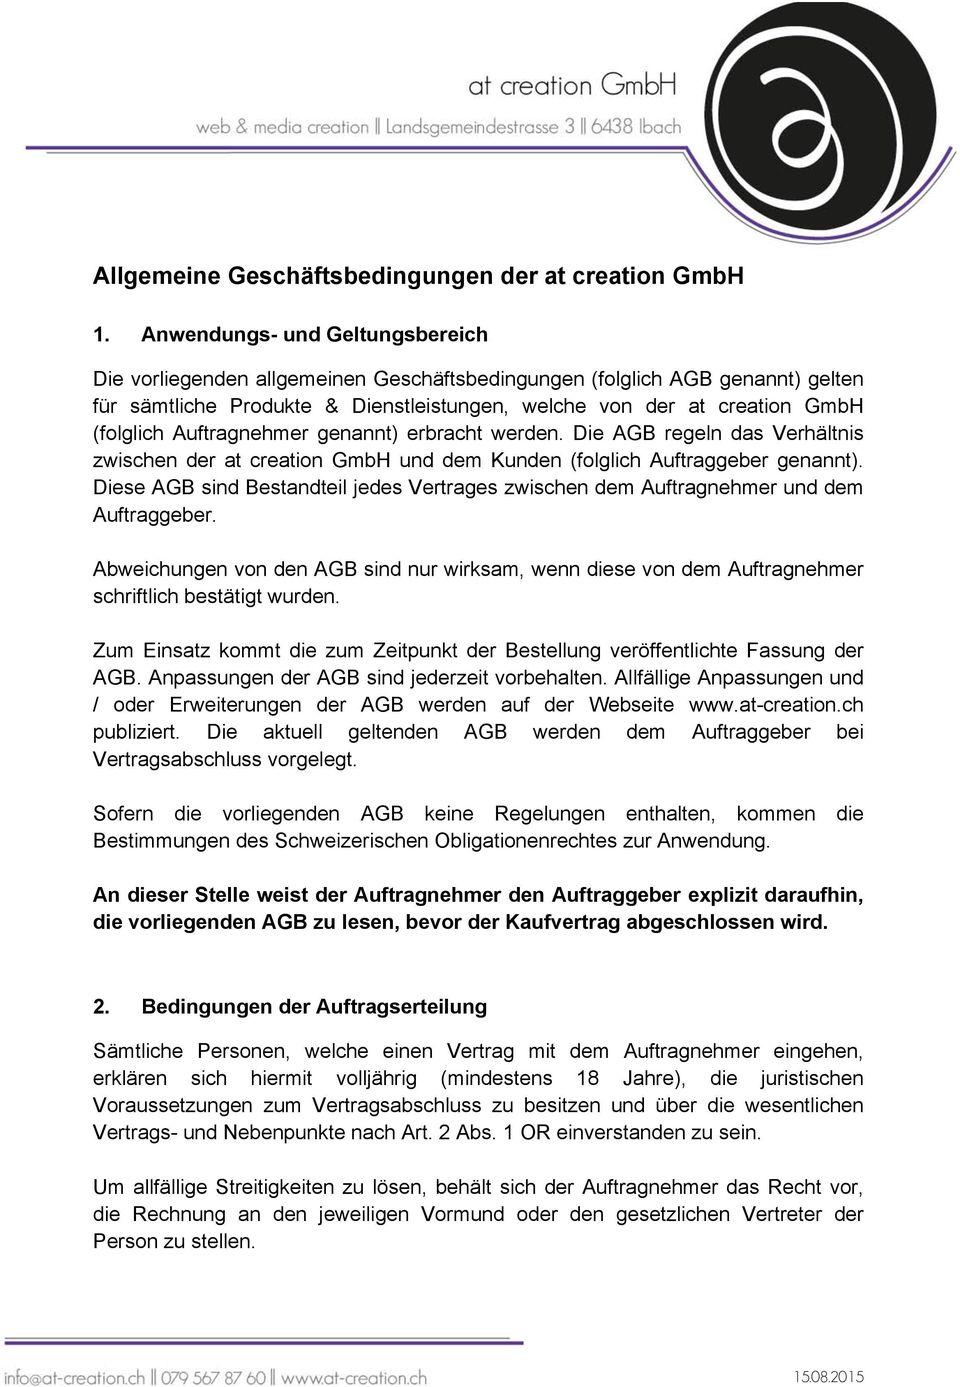 Auftragnehmer genannt) erbracht werden. Die AGB regeln das Verhältnis zwischen der at creation GmbH und dem Kunden (folglich Auftraggeber genannt).